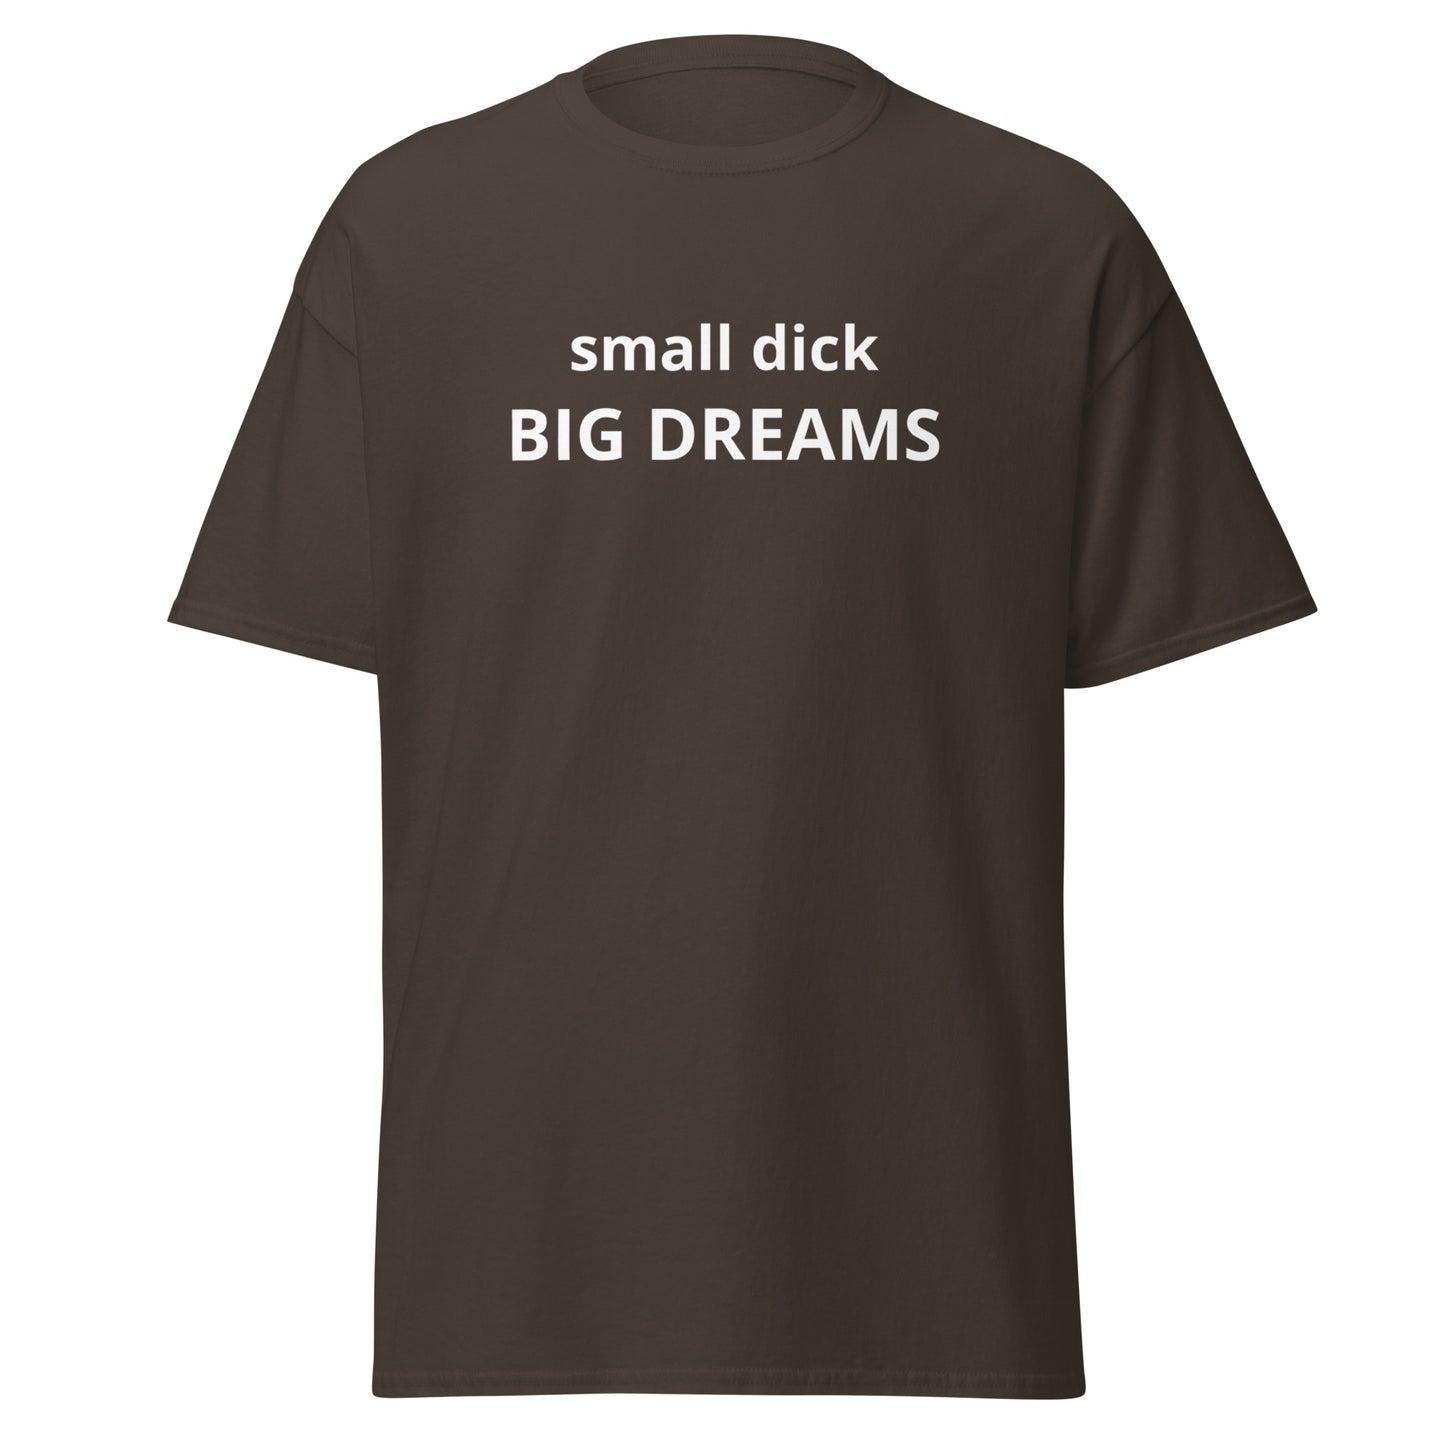 SMALL DICK BIG DREAMS